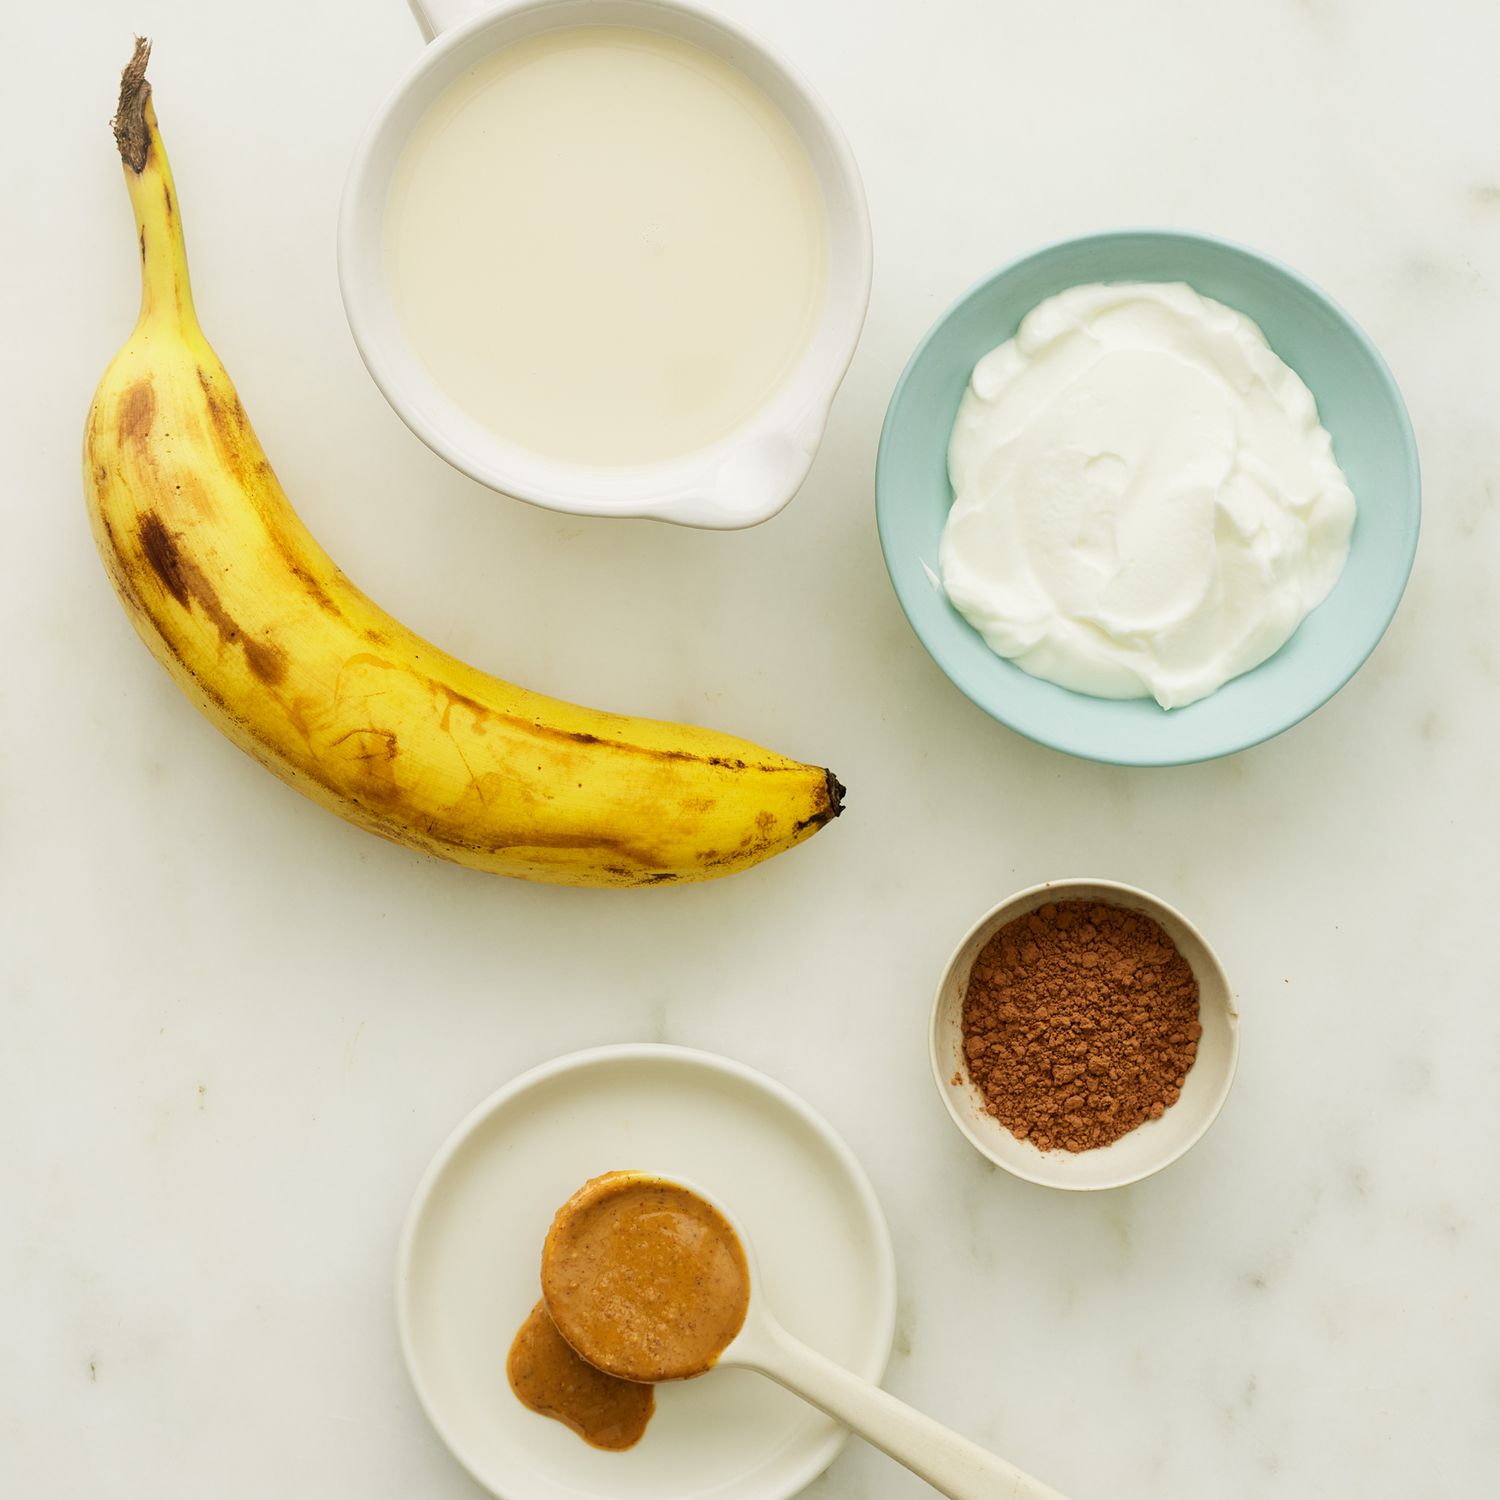 Un material de batido de proteína de mantequilla de mantequilla de chocolate y galletas con chispas de chocolate se sacuden en un lado blanco.